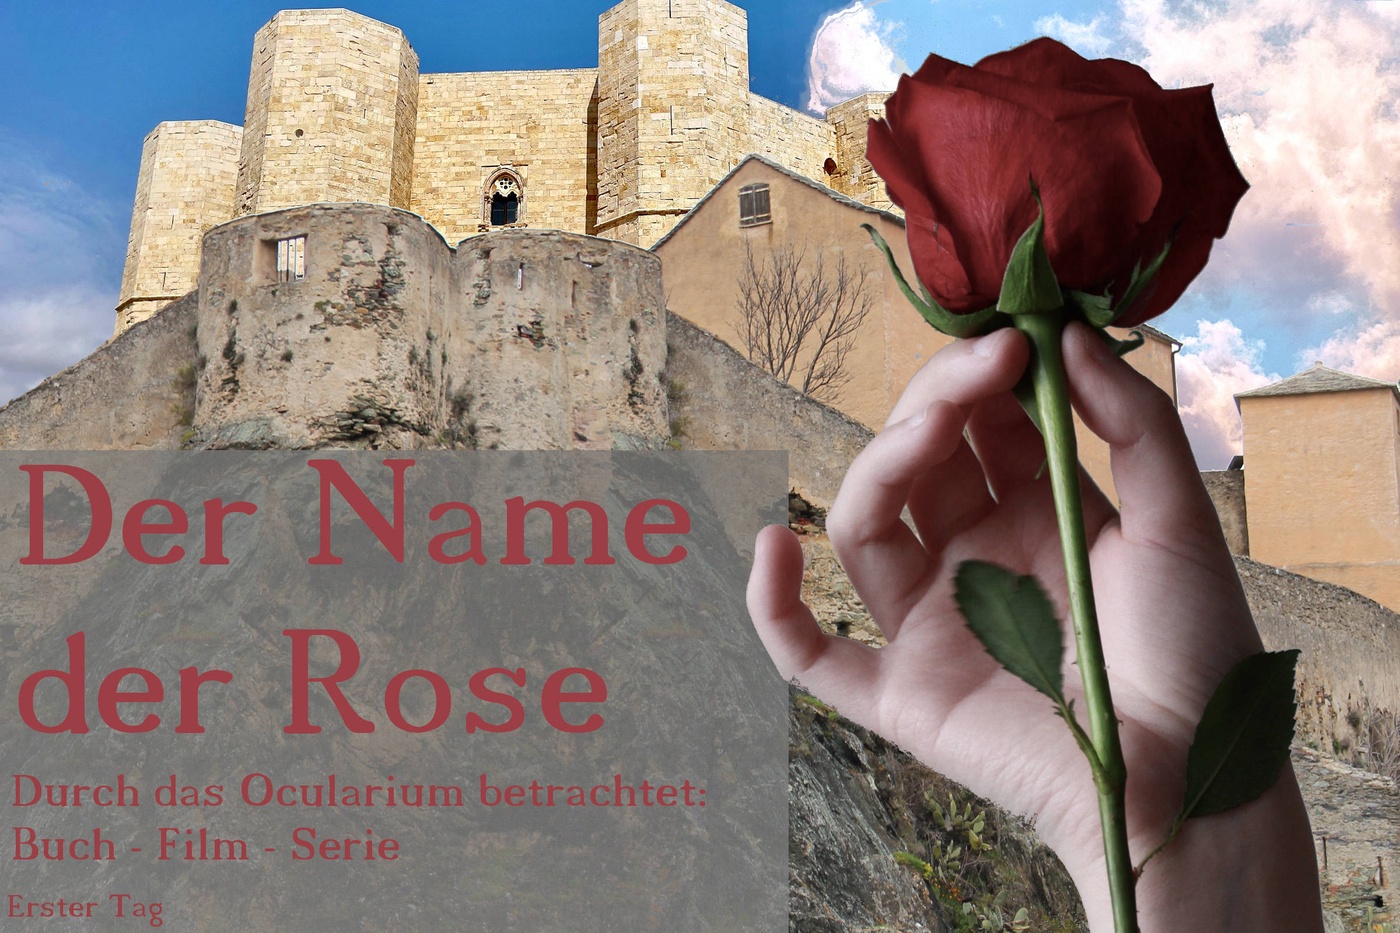 Der Name der Rose - Durch das Ocularium betrachtet: Buch - Film - Serie (3)